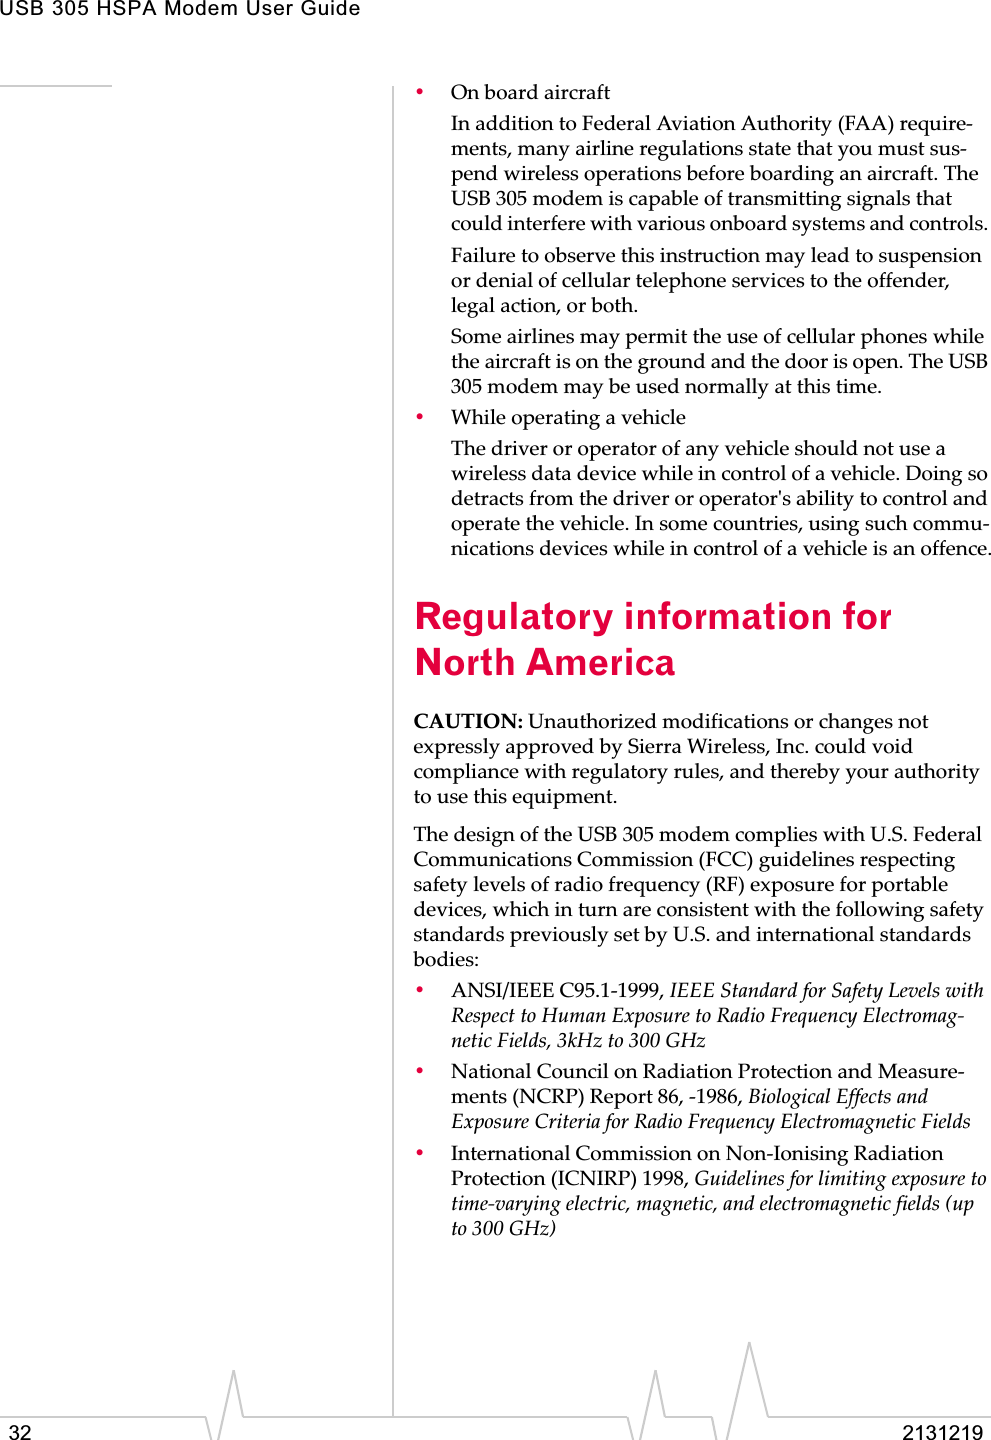 USB 305 HSPA Modem User Guide32 2131219•OnȱboardȱaircraftInȱadditionȱtoȱFederalȱAviationȱAuthorityȱ(FAA)ȱrequireȬments,ȱmanyȱairlineȱregulationsȱstateȱthatȱyouȱmustȱsusȬpendȱwirelessȱoperationsȱbeforeȱboardingȱanȱaircraft.ȱTheȱUSBȱ305ȱmodemȱisȱcapableȱofȱtransmittingȱsignalsȱthatȱcouldȱinterfereȱwithȱvariousȱonboardȱsystemsȱandȱcontrols.ȱFailureȱtoȱobserveȱthisȱinstructionȱmayȱleadȱtoȱsuspensionȱorȱdenialȱofȱcellularȱtelephoneȱservicesȱtoȱtheȱoffender,ȱlegalȱaction,ȱorȱboth.Someȱairlinesȱmayȱpermitȱtheȱuseȱofȱcellularȱphonesȱwhileȱtheȱaircraftȱisȱonȱtheȱgroundȱandȱtheȱdoorȱisȱopen.ȱTheȱUSBȱ305ȱmodemȱmayȱbeȱusedȱnormallyȱatȱthisȱtime.•WhileȱoperatingȱaȱvehicleTheȱdriverȱorȱoperatorȱofȱanyȱvehicleȱshouldȱnotȱuseȱaȱwirelessȱdataȱdeviceȱwhileȱinȱcontrolȱofȱaȱvehicle.ȱDoingȱsoȱdetractsȱfromȱtheȱdriverȱorȱoperatorȇsȱabilityȱtoȱcontrolȱandȱoperateȱtheȱvehicle.ȱInȱsomeȱcountries,ȱusingȱsuchȱcommuȬnicationsȱdevicesȱwhileȱinȱcontrolȱofȱaȱvehicleȱisȱanȱoffence.Regulatory information for North AmericaCAUTION:ȱUnauthorizedȱmodificationsȱorȱchangesȱnotȱexpresslyȱapprovedȱbyȱSierraȱWireless,ȱInc.ȱcouldȱvoidȱcomplianceȱwithȱregulatoryȱrules,ȱandȱtherebyȱyourȱauthorityȱtoȱuseȱthisȱequipment.TheȱdesignȱofȱtheȱUSBȱ305ȱmodemȱcompliesȱwithȱU.S.ȱFederalȱCommunicationsȱCommissionȱ(FCC)ȱguidelinesȱrespectingȱsafetyȱlevelsȱofȱradioȱfrequencyȱ(RF)ȱexposureȱforȱportableȱdevices,ȱwhichȱinȱturnȱareȱconsistentȱwithȱtheȱfollowingȱsafetyȱstandardsȱpreviouslyȱsetȱbyȱU.S.ȱandȱinternationalȱstandardsȱbodies:•ANSI/IEEEȱC95.1Ȭ1999,ȱIEEEȱStandardȱforȱSafetyȱLevelsȱwithȱRespectȱtoȱHumanȱExposureȱtoȱRadioȱFrequencyȱElectromagȬneticȱFields,ȱ3kHzȱtoȱ300ȱGHz•NationalȱCouncilȱonȱRadiationȱProtectionȱandȱMeasureȬmentsȱ(NCRP)ȱReportȱ86,ȱȬ1986,ȱBiologicalȱEffectsȱandȱExposureȱCriteriaȱforȱRadioȱFrequencyȱElectromagneticȱFields•InternationalȱCommissionȱonȱNonȬIonisingȱRadiationȱProtectionȱ(ICNIRP)ȱ1998,ȱGuidelinesȱforȱlimitingȱexposureȱtoȱtimeȬvaryingȱelectric,ȱmagnetic,ȱandȱelectromagneticȱfieldsȱ(upȱtoȱ300ȱGHz)